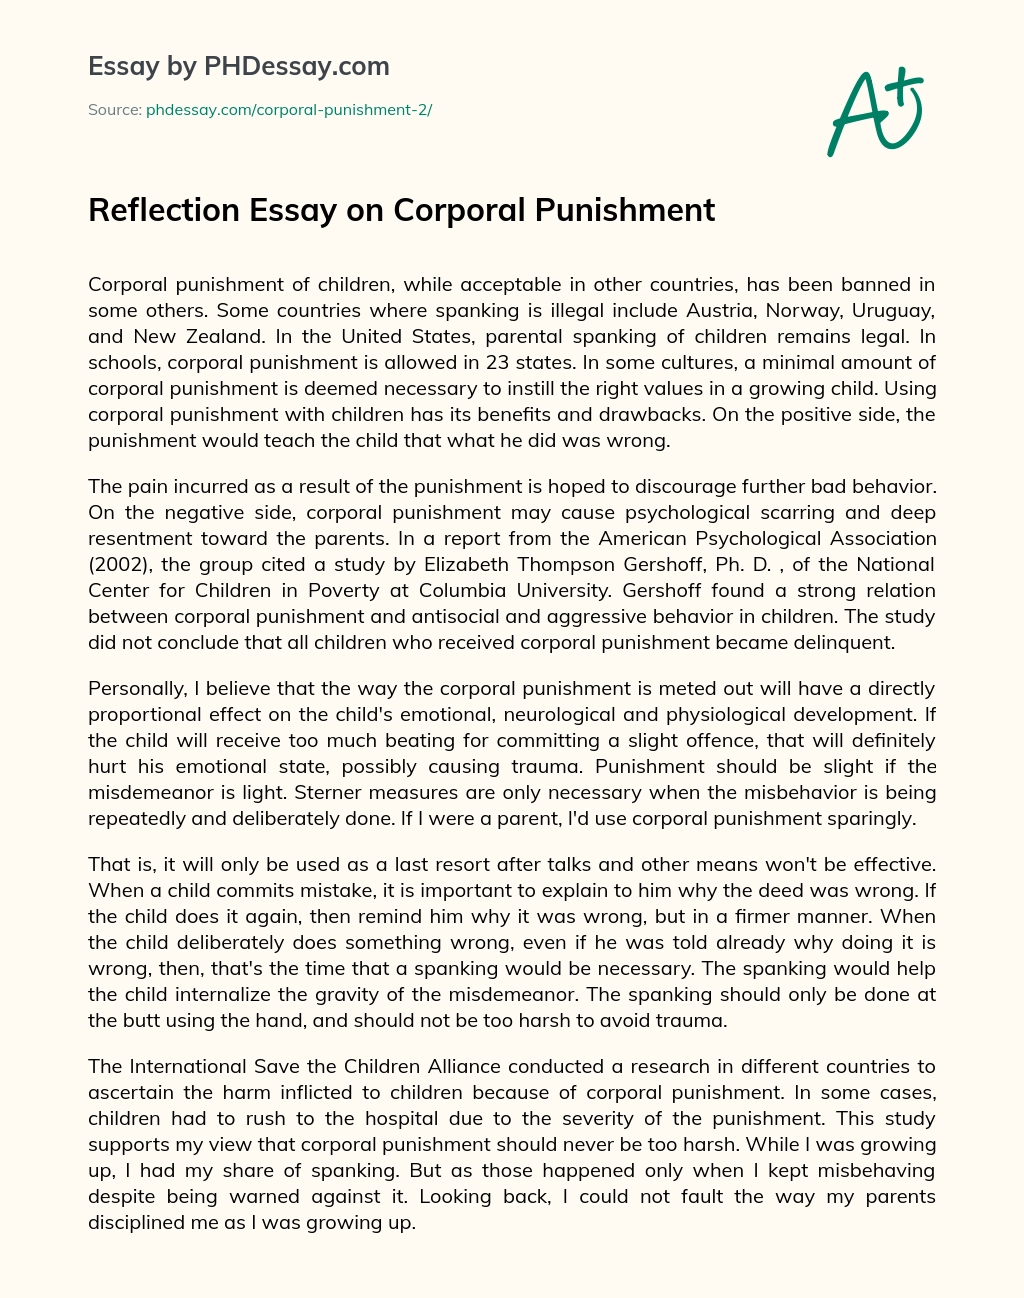 corporal punishment essay conclusion